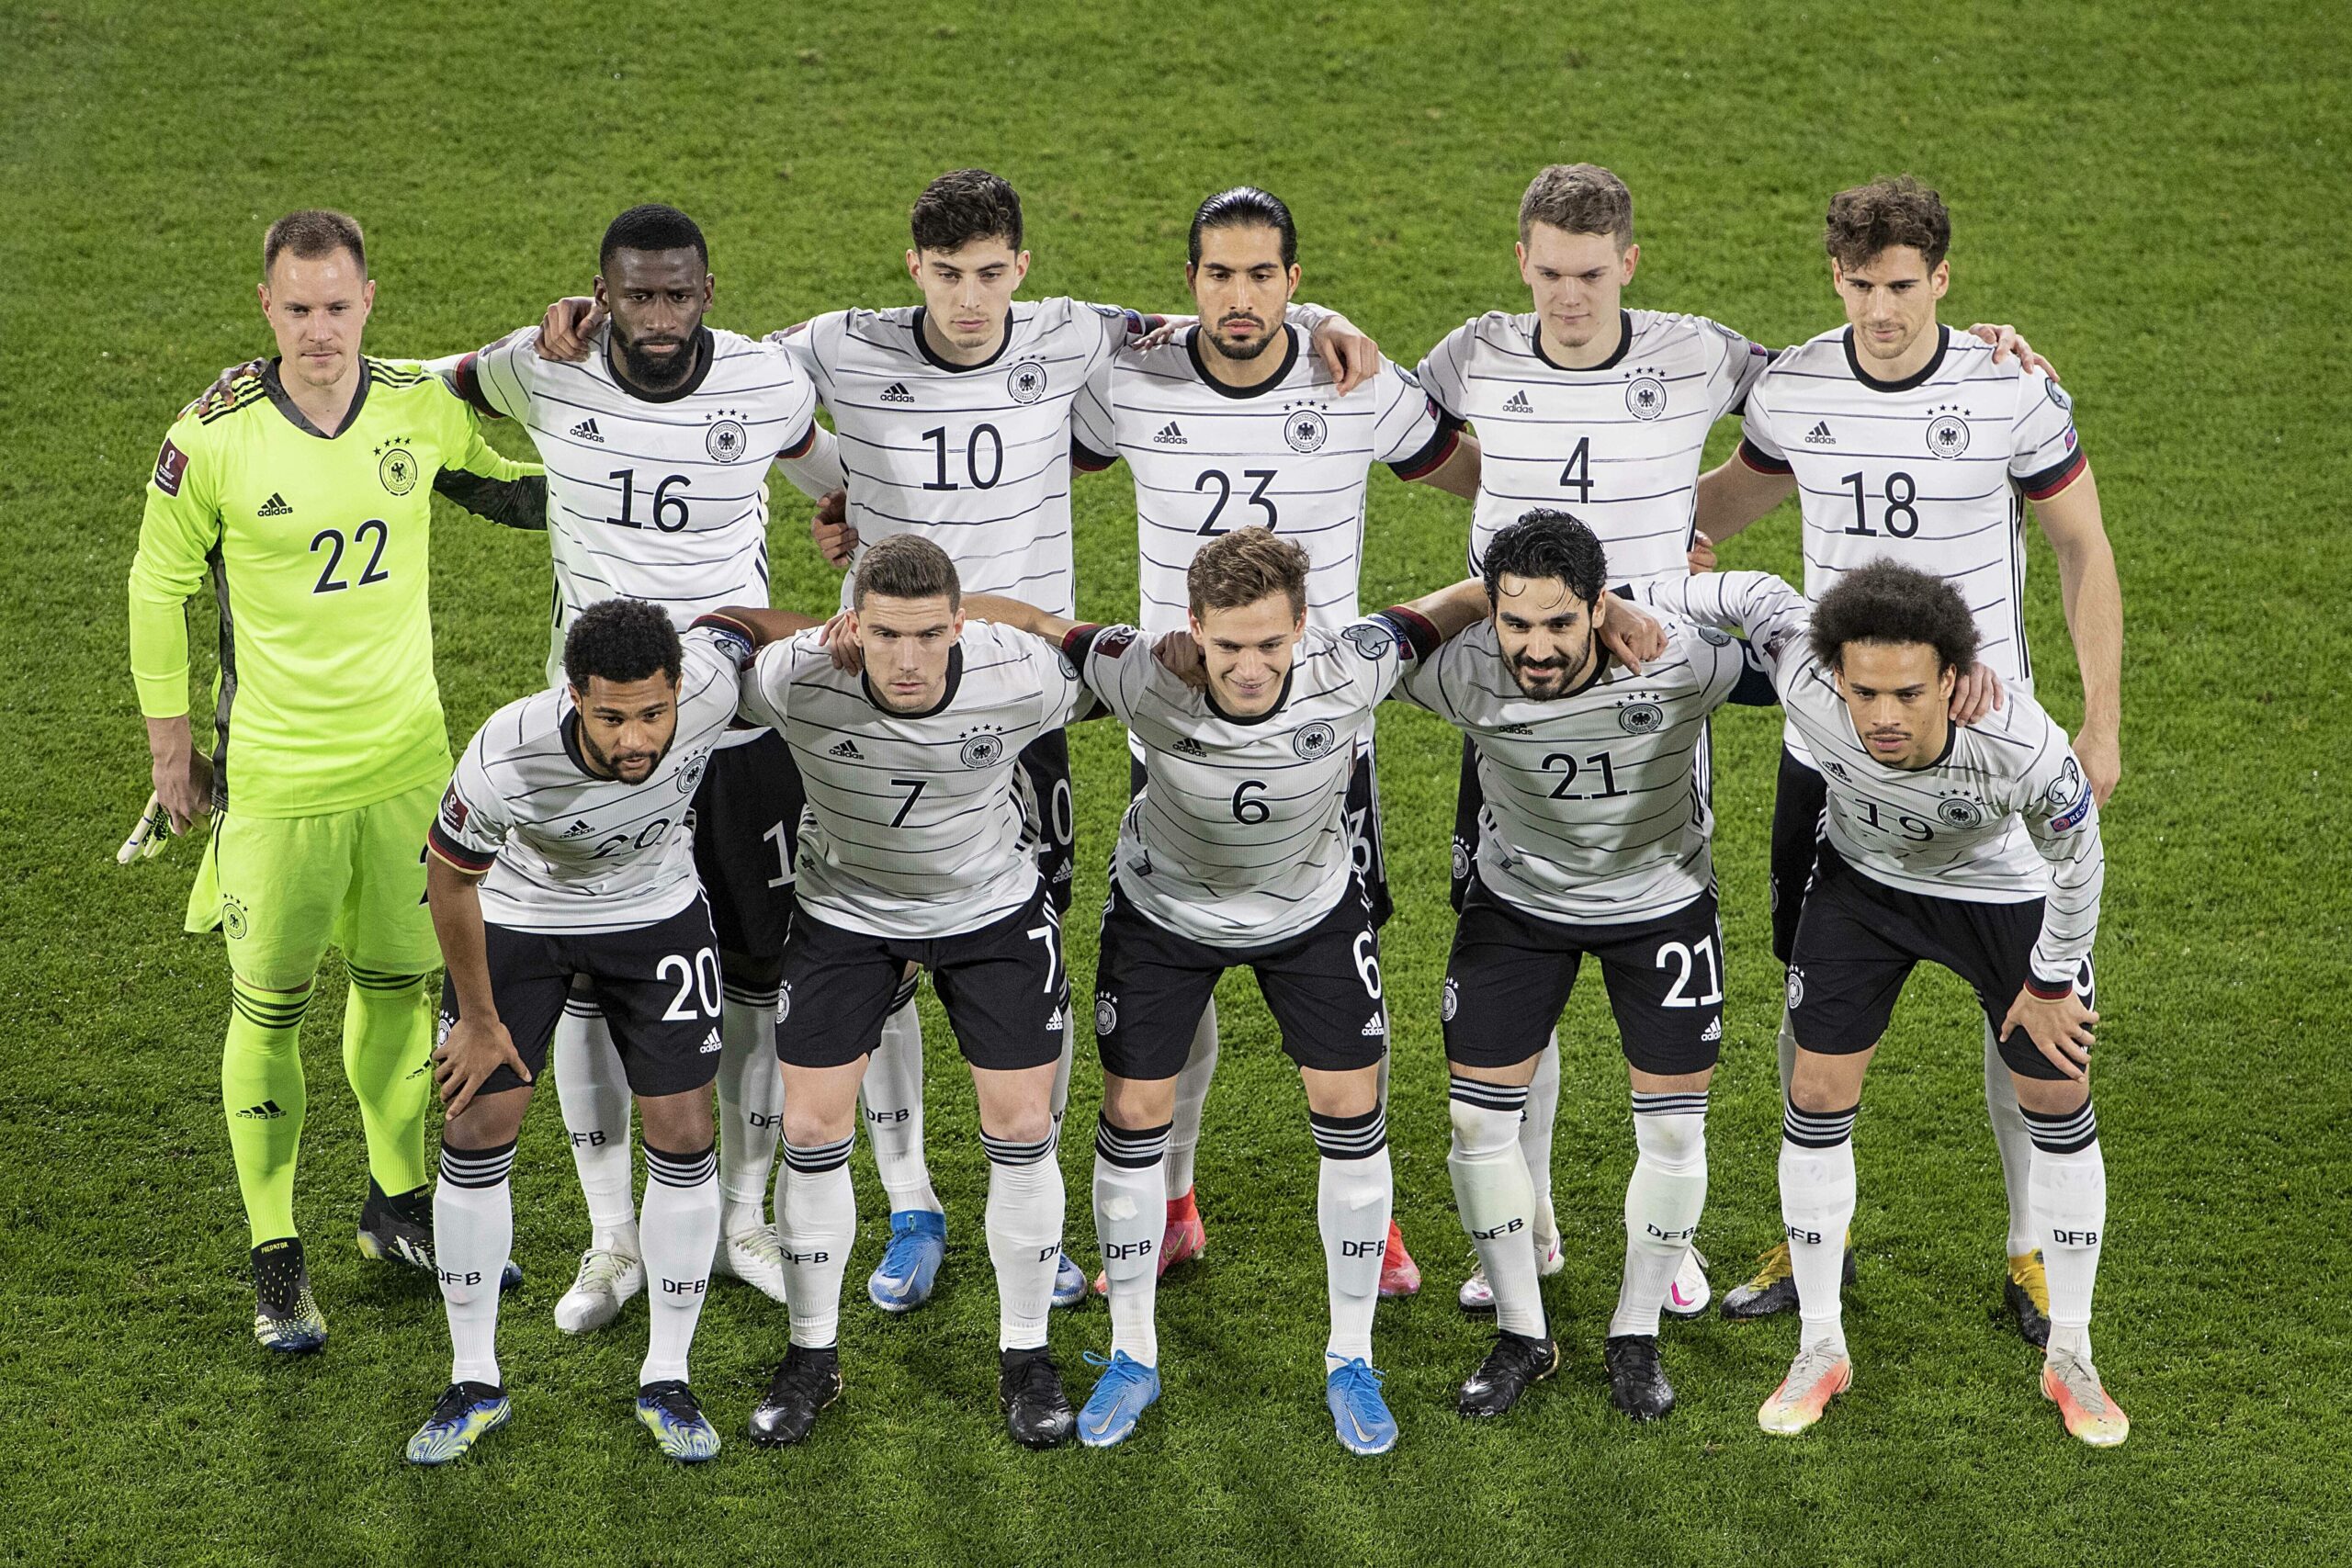 Foto der deutschen Fußballnationalmannschaft vor einem Fußballspiel. Die Spieler sind in zwei Reihen aufgestellt. Die hintere Reihe steht gerade, die vordere Reihe leicht gebückt.